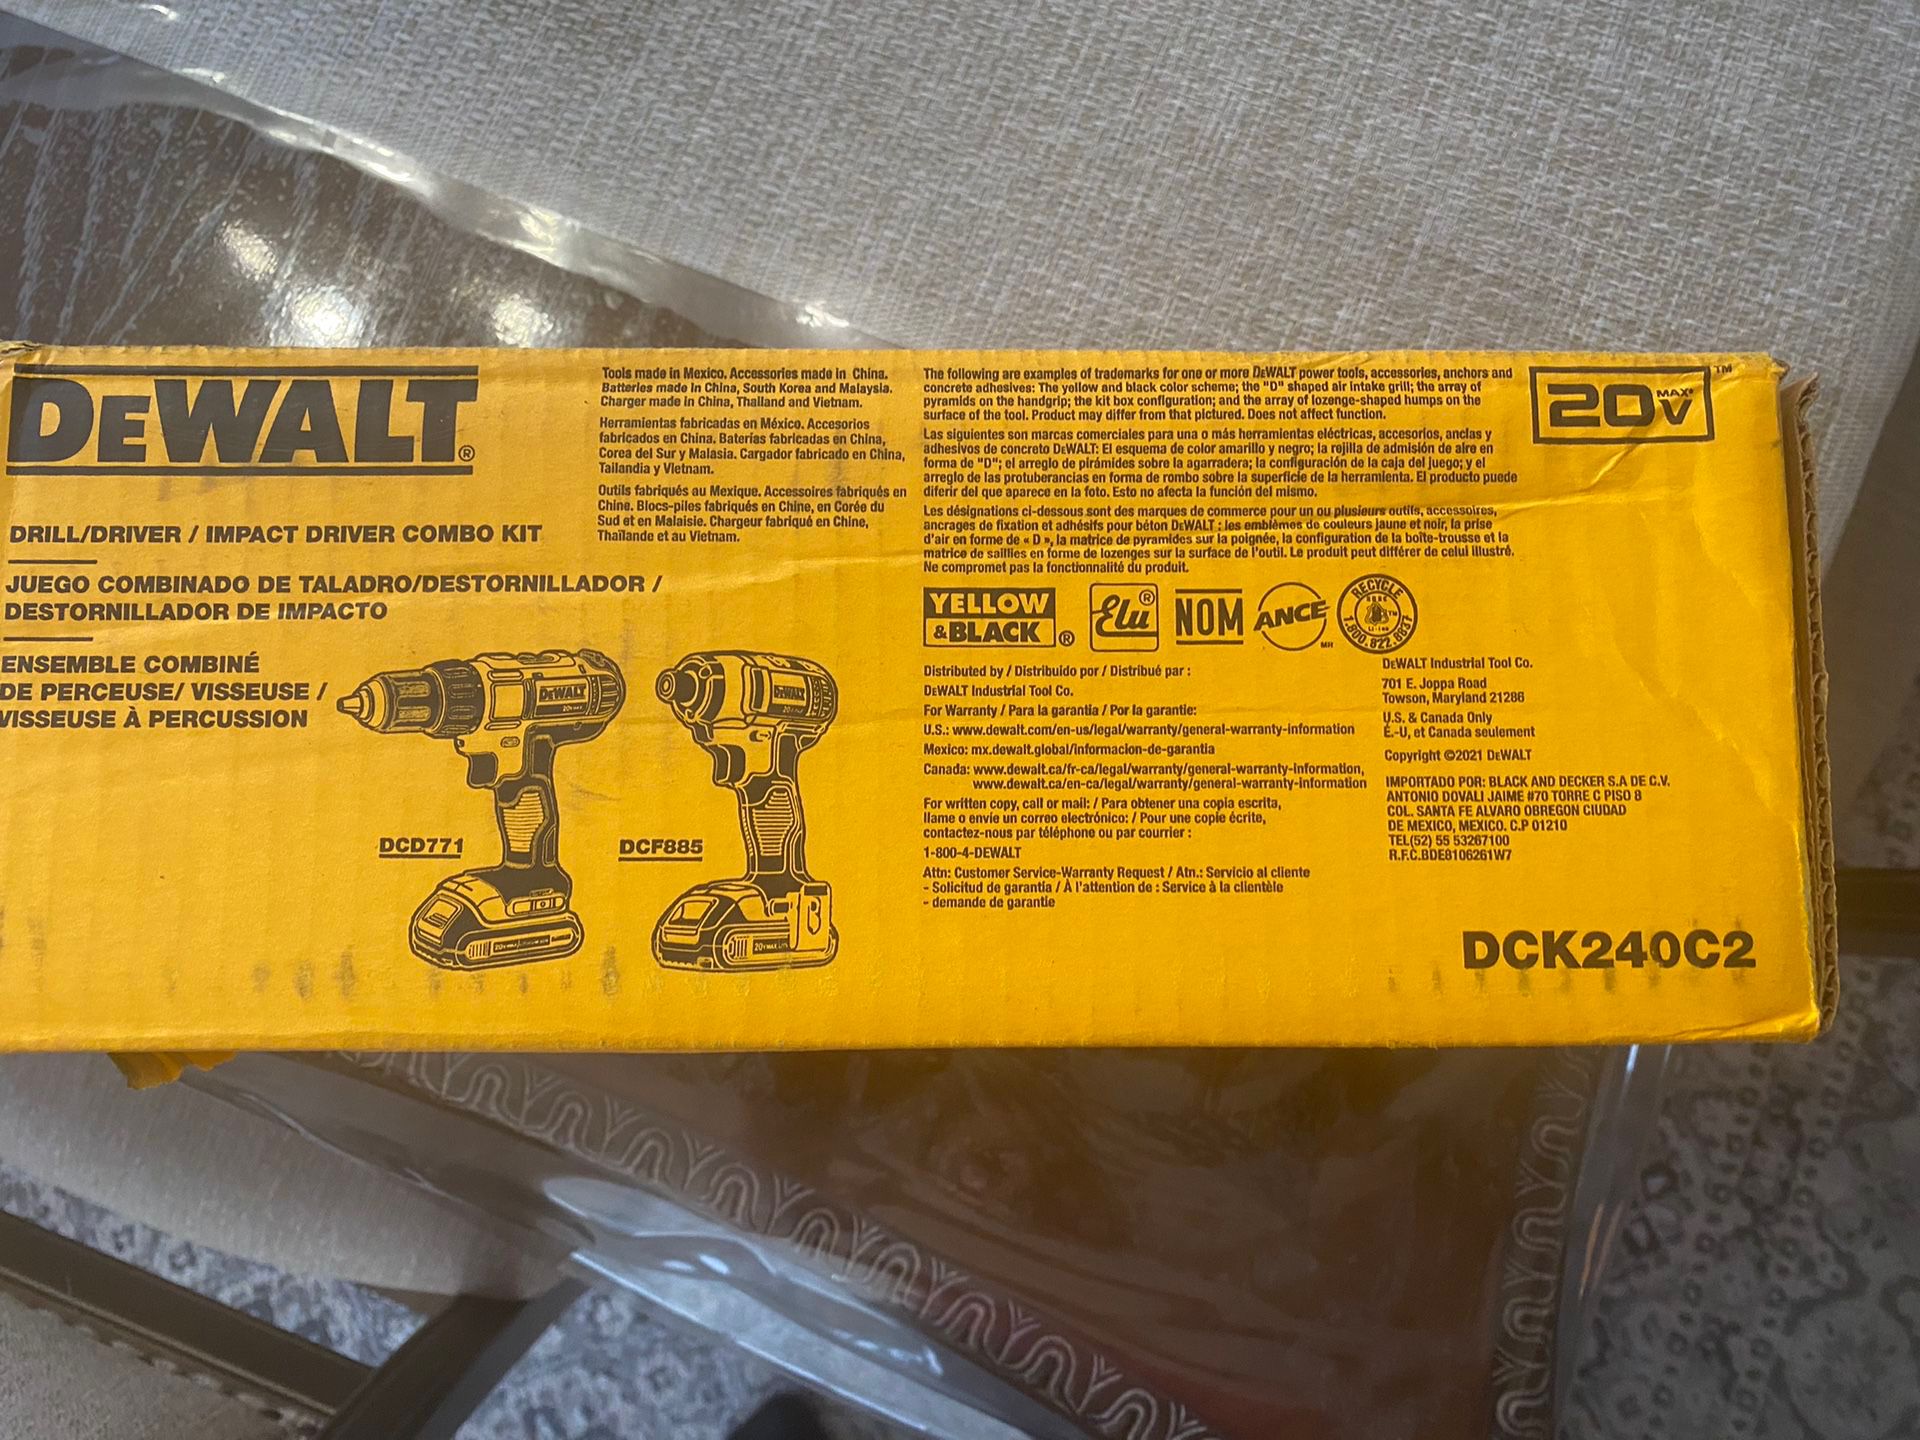 DEWALT 20V MAX Drill Kit with 2 Batteries